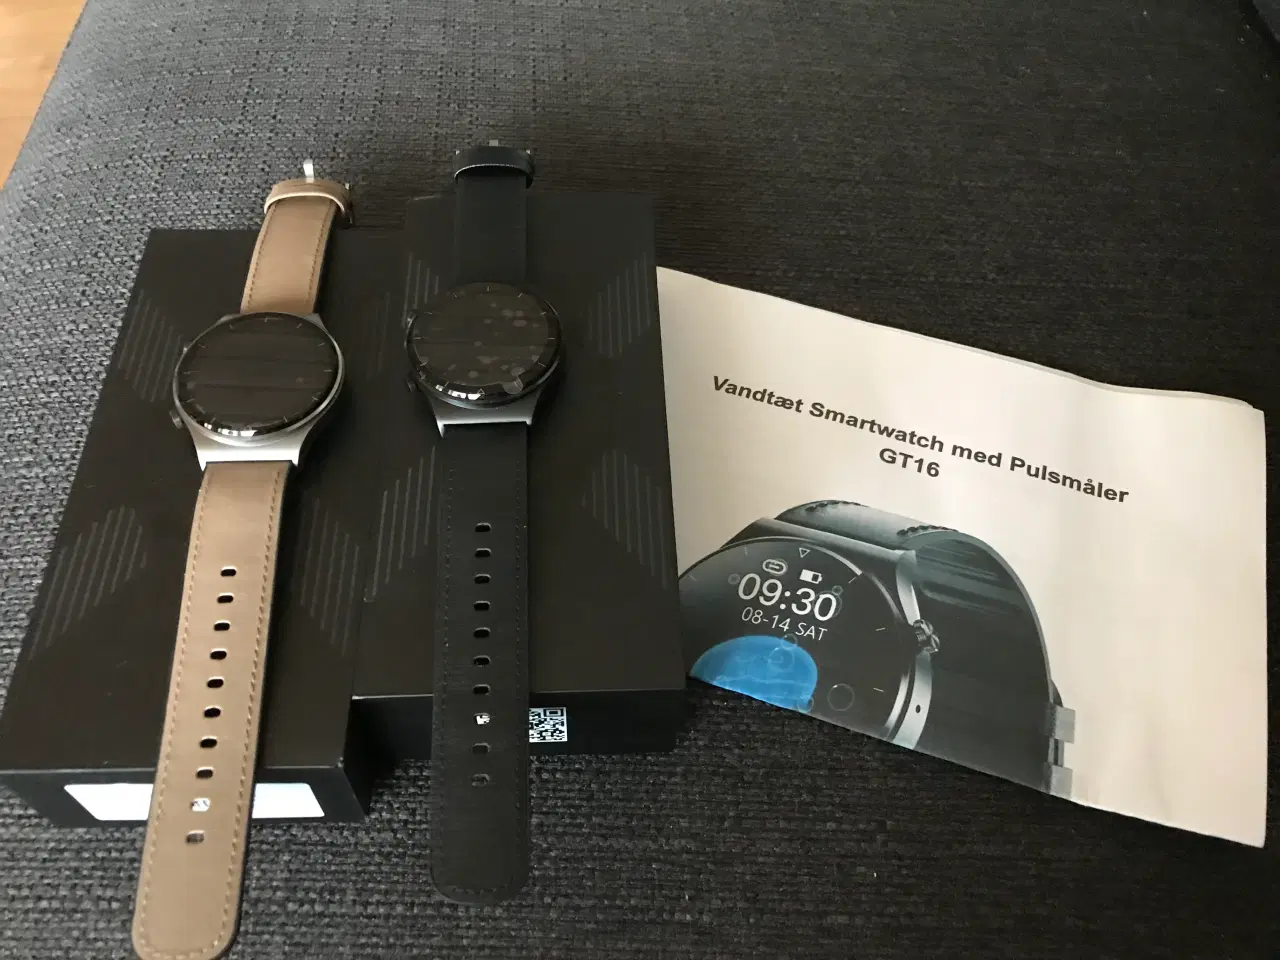 Billede 1 - 2 x vandtæt smartwatch med pulsmåler GT 16